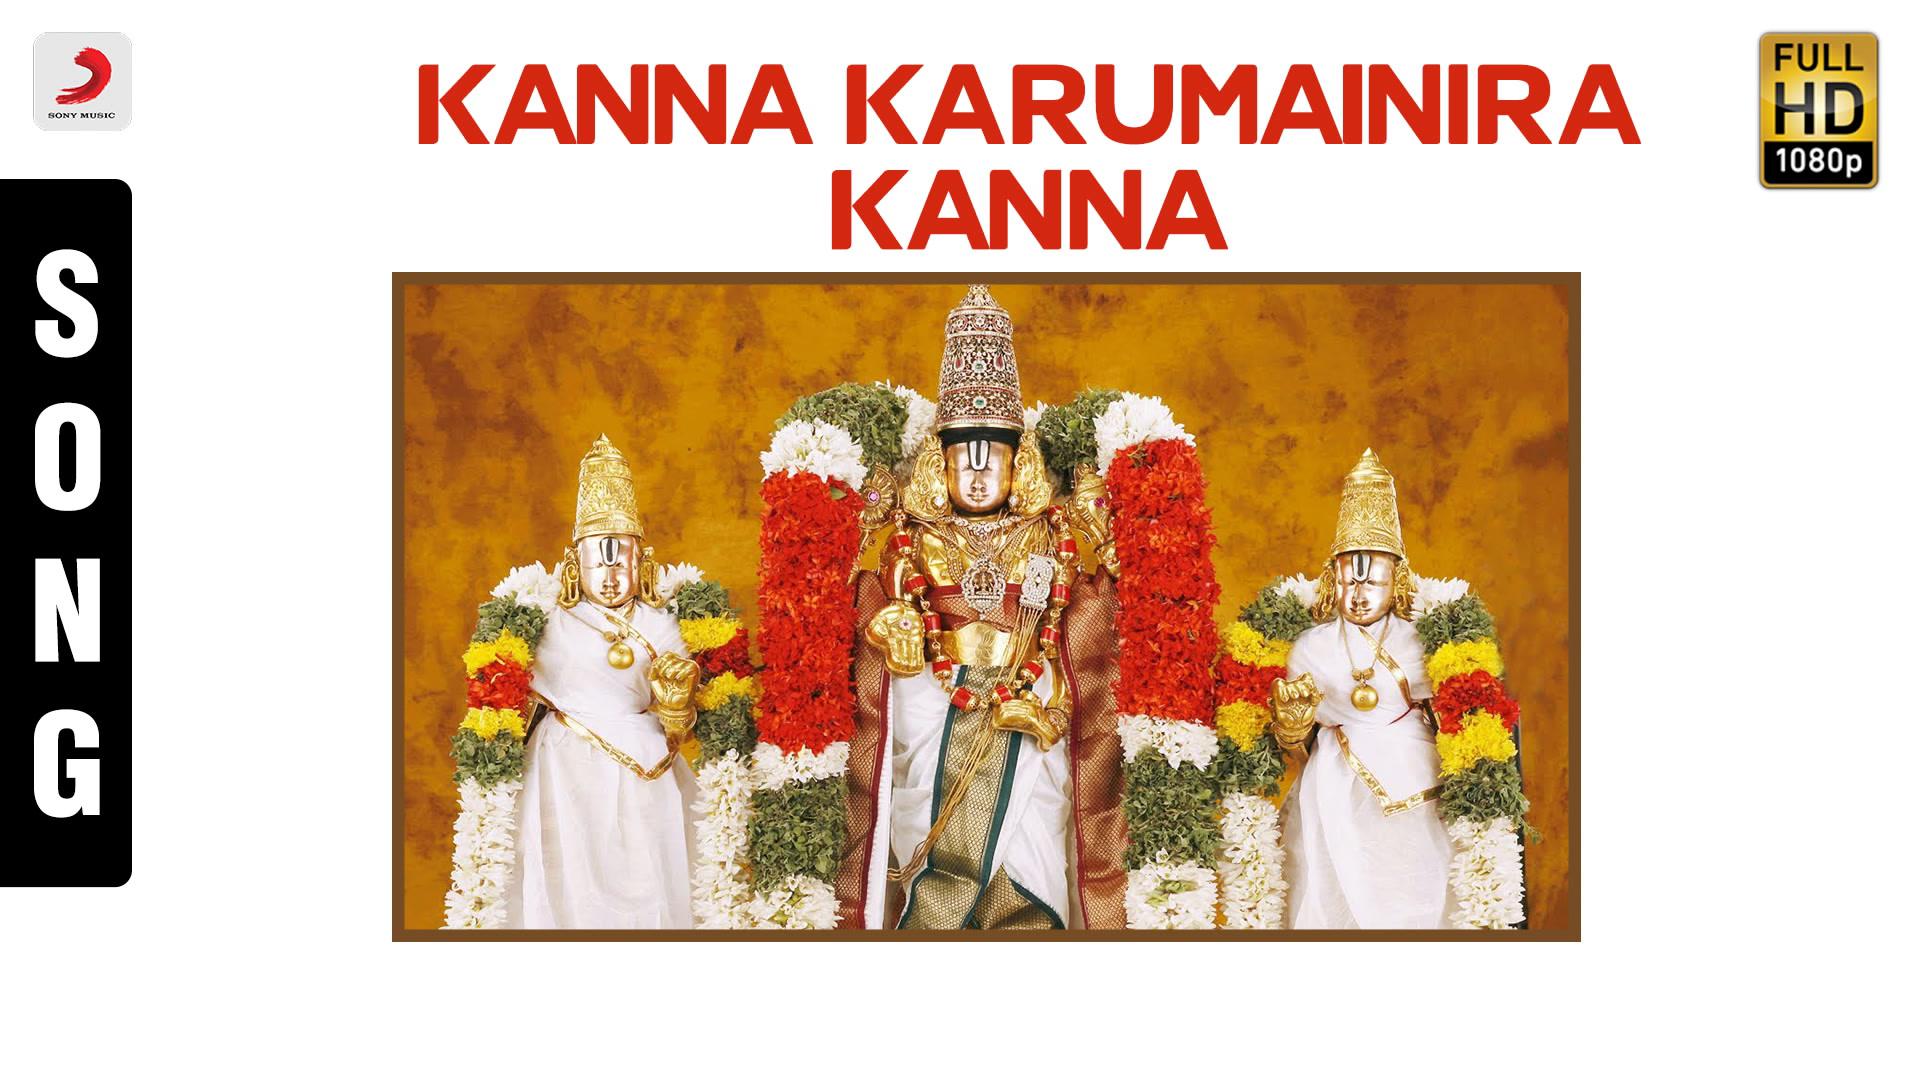 Mahanadhi Shobana - Kanna Karumainira Kanna (Pseudo Video)